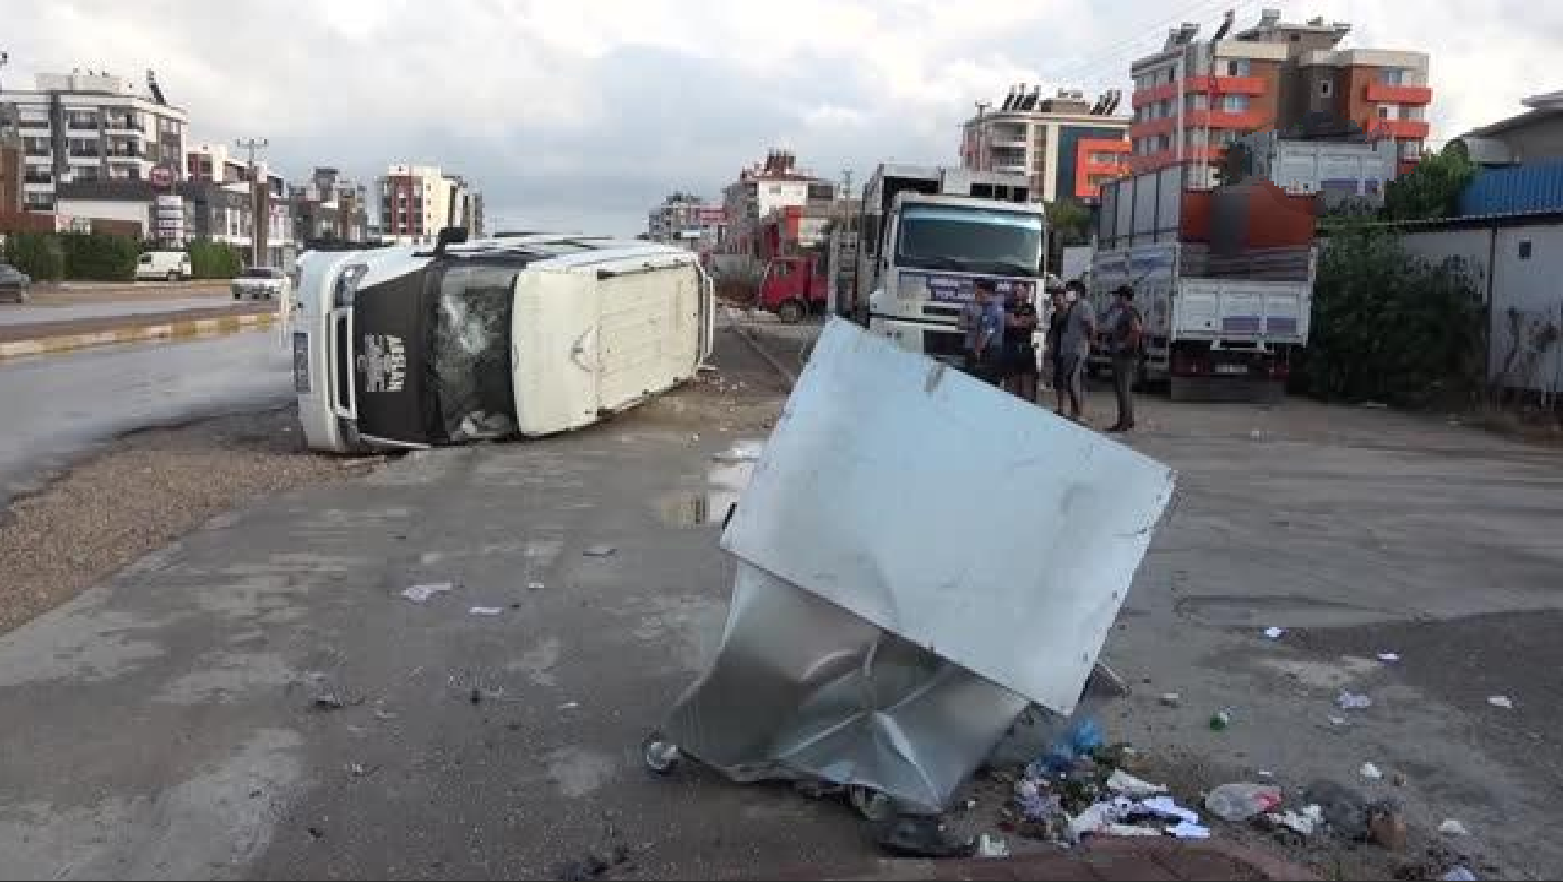 Antalya'da direksiyon hakimiyetini kaybeden minibüs sürücüsü, kaldırım ve çöp konteynırına çarptıktan sonra aracını yan devirdi